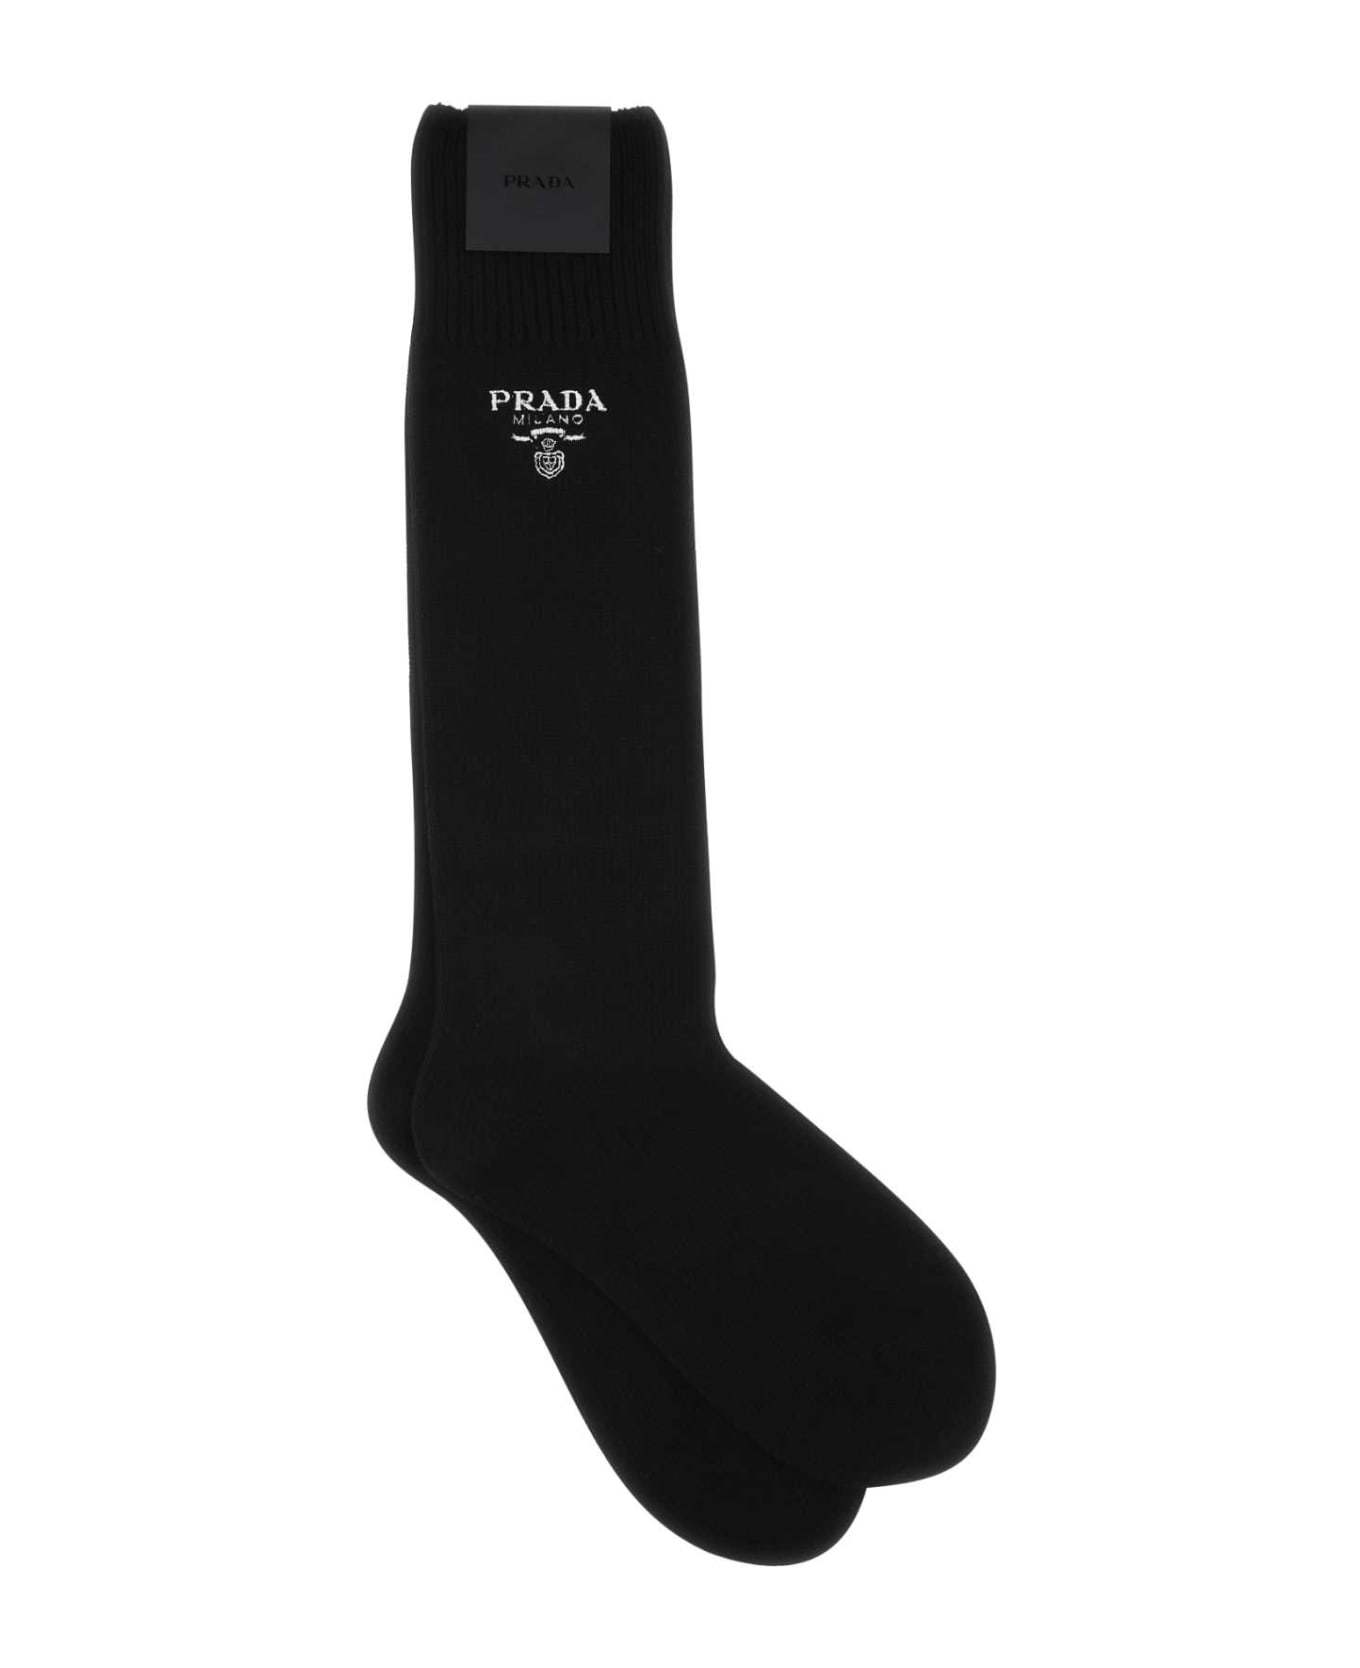 Prada Black Virgin Wool Blend Socks - NERO 靴下